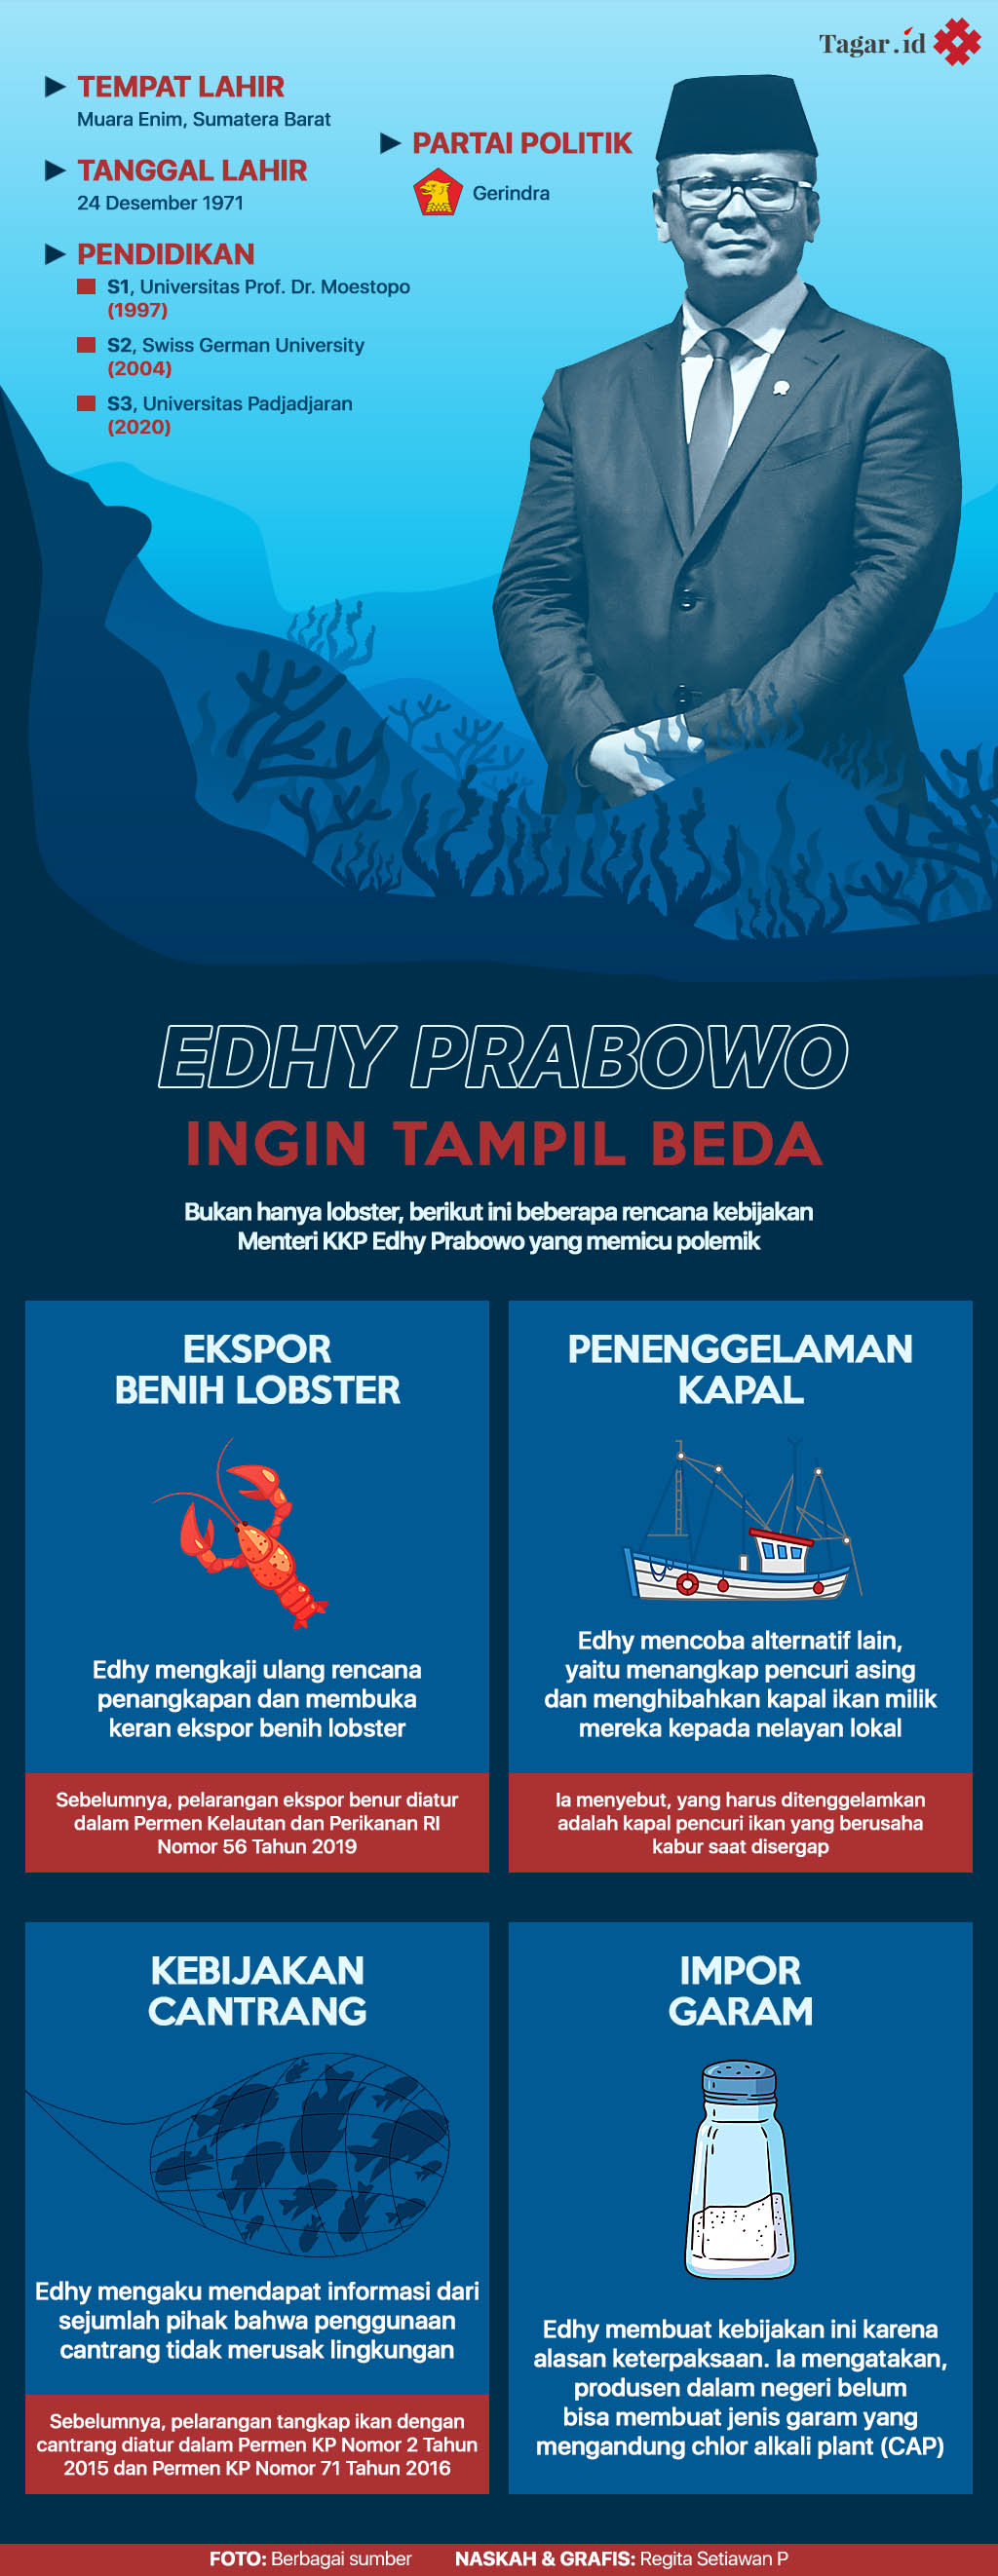 Infografis: Edhy Prabowo Ingin Tampil Beda